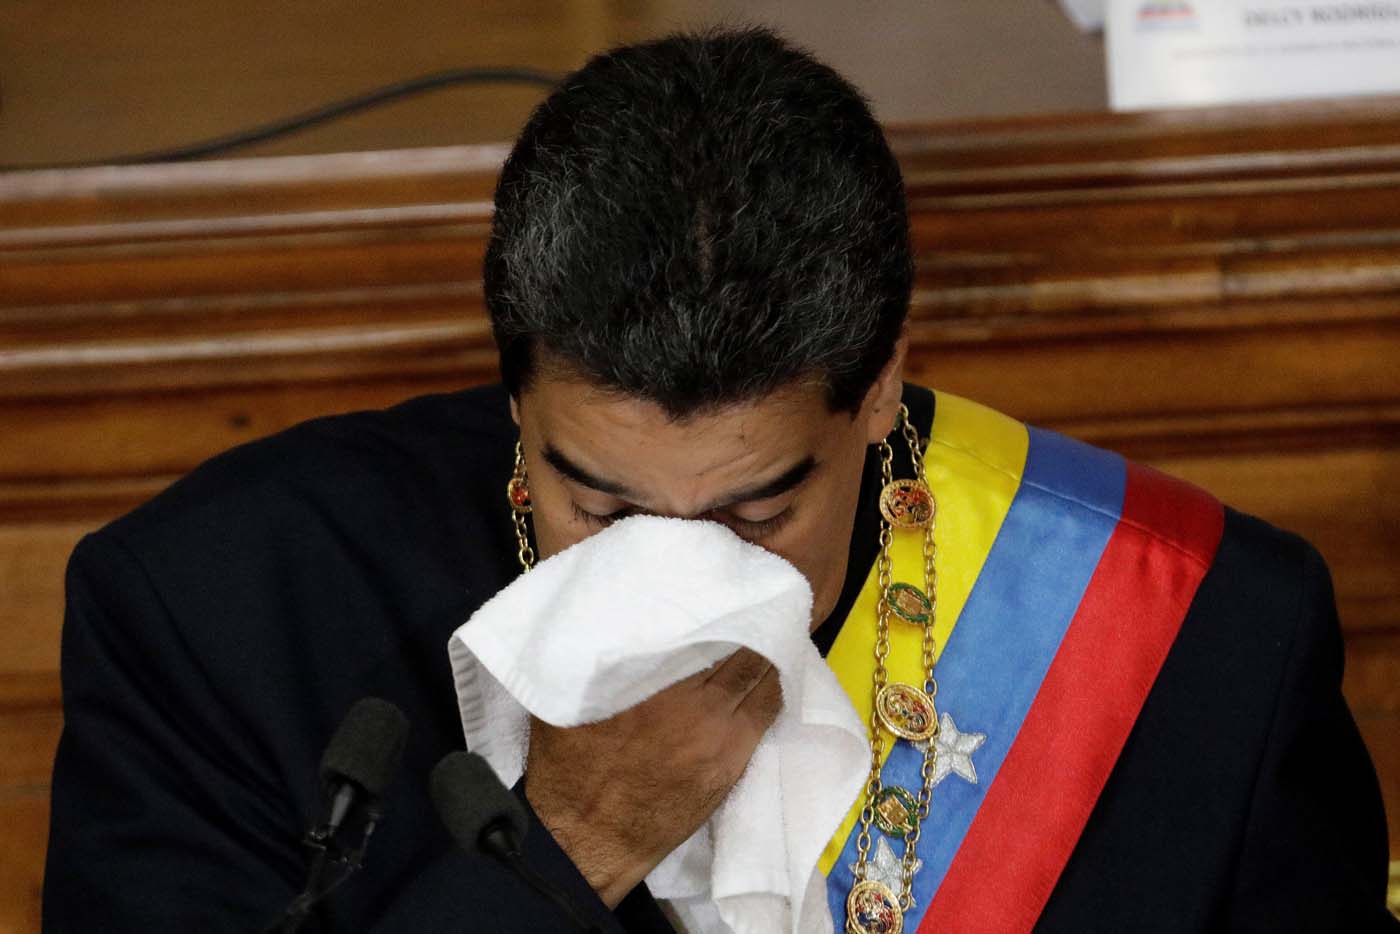 “No sé si va a haber”: Lo que dijo Maduro sobre las elecciones parlamentarias de 2020 (Audio)